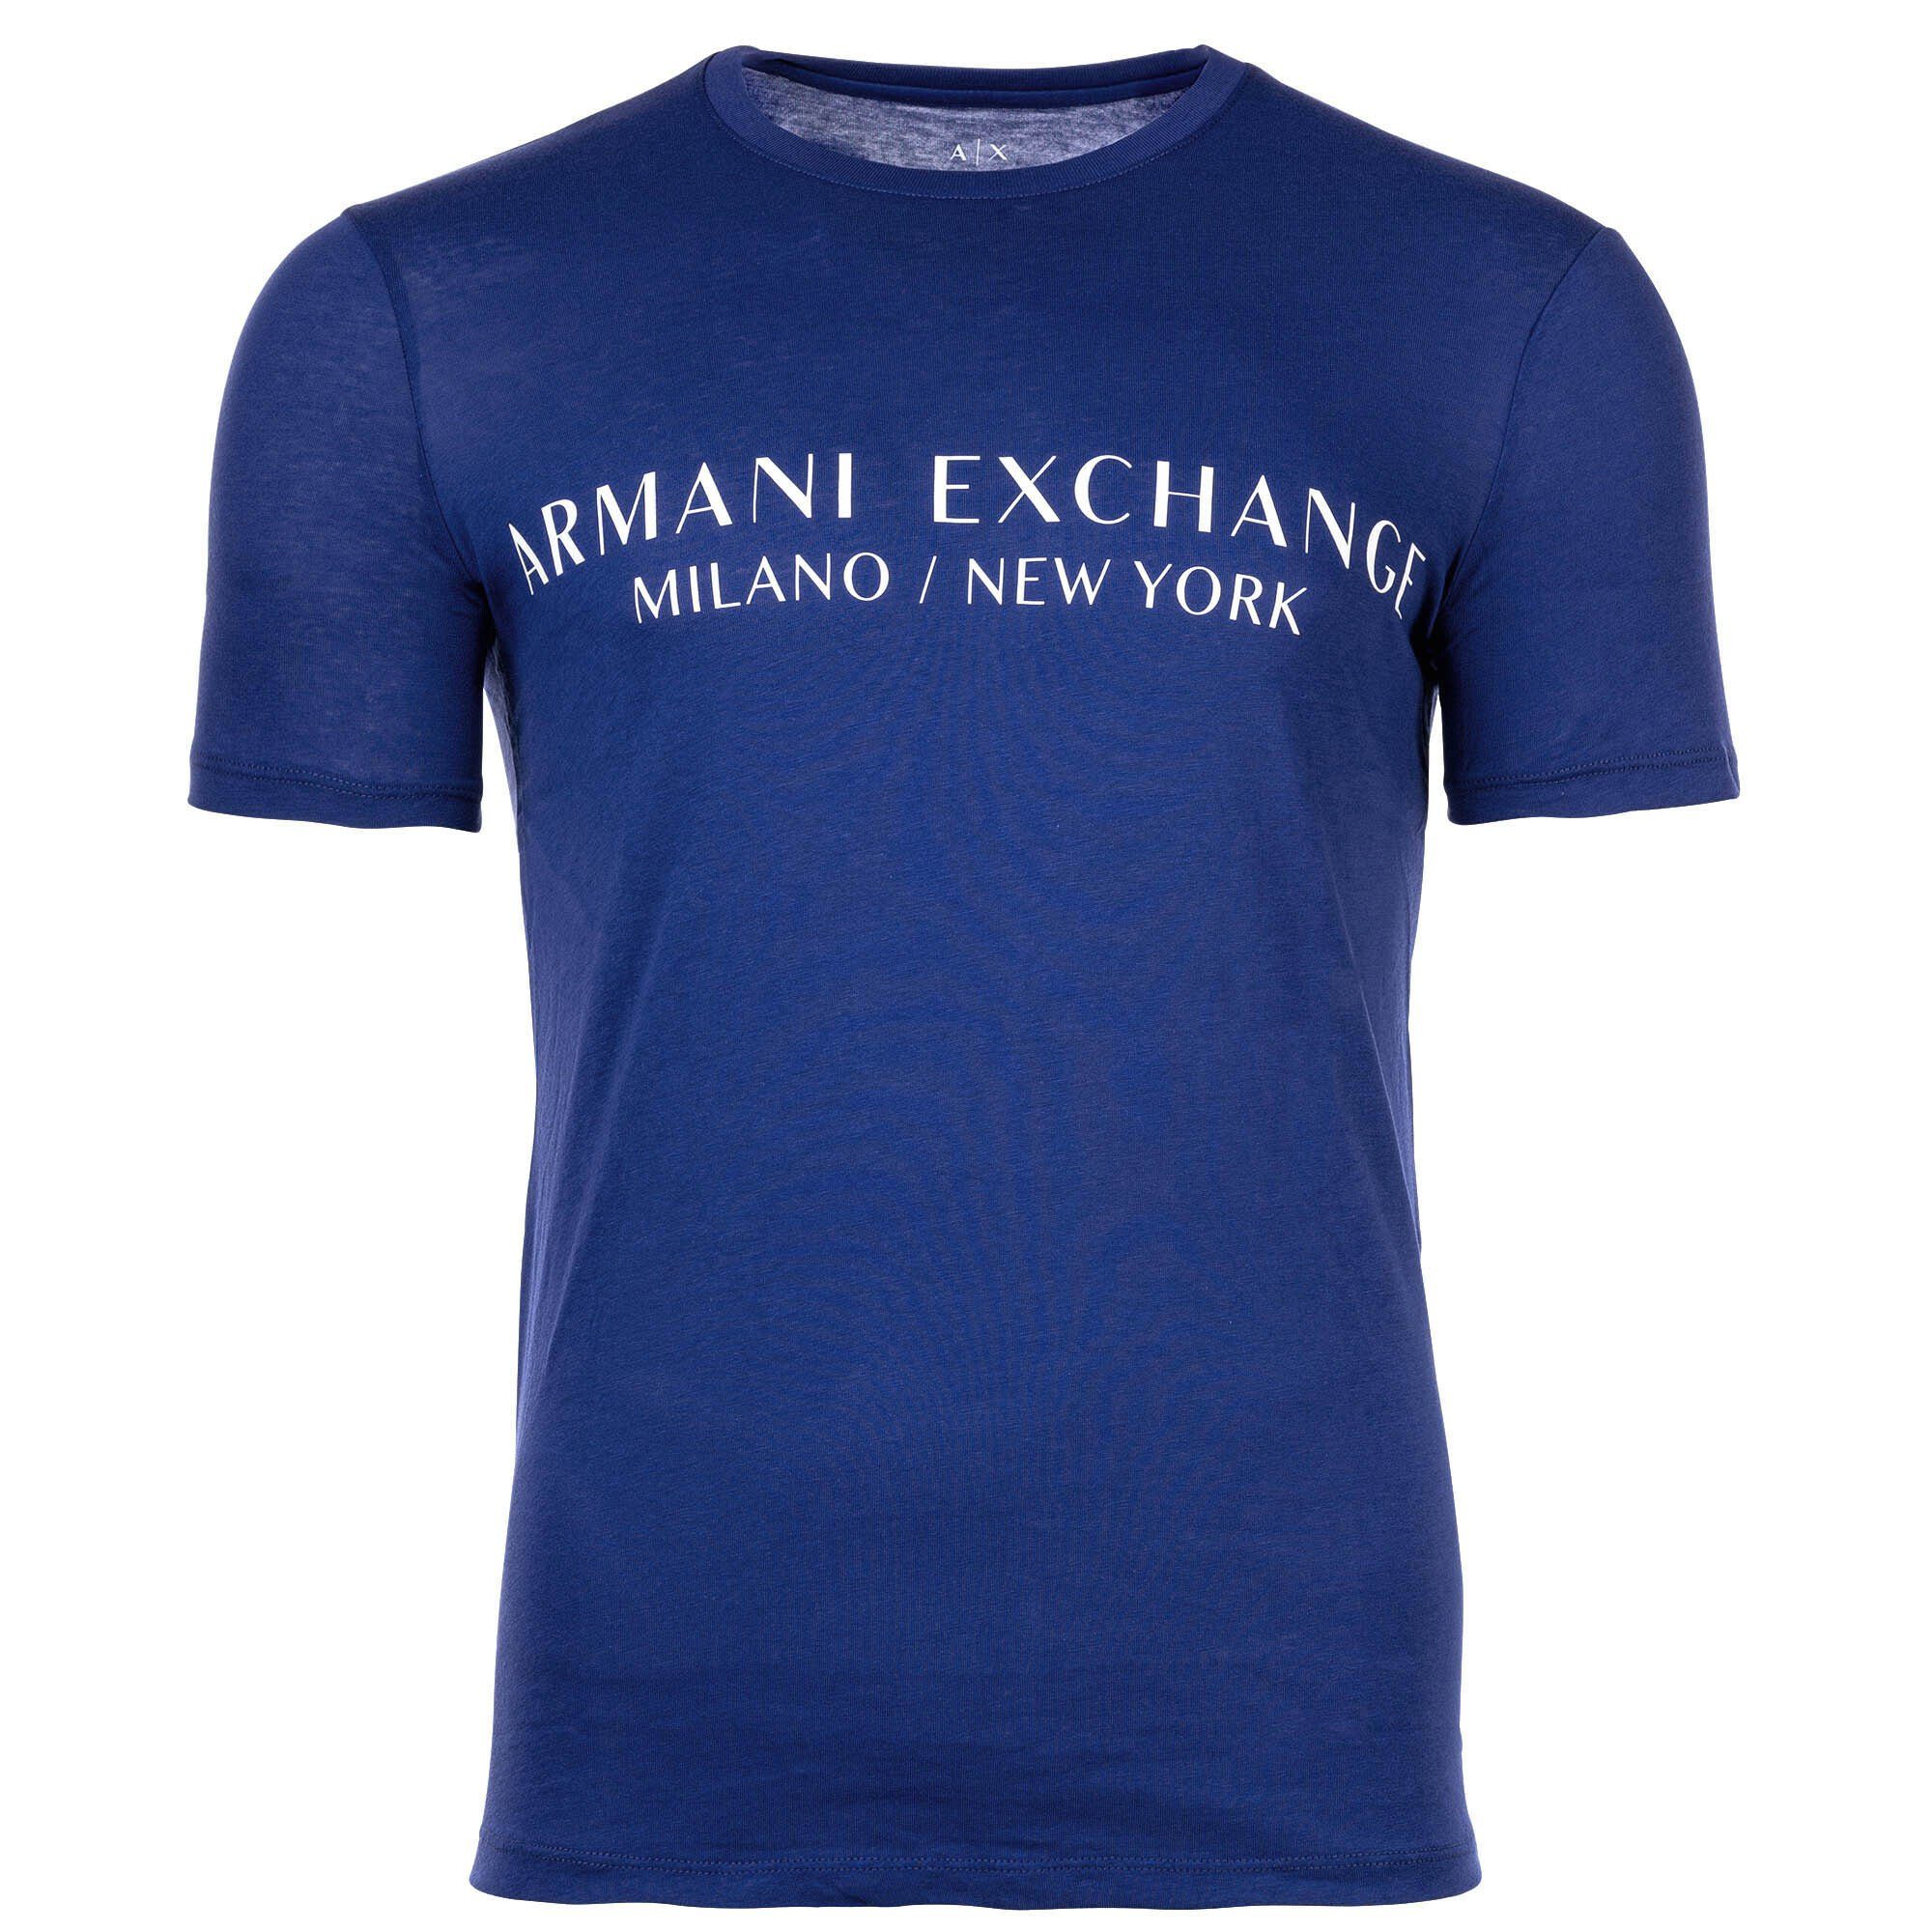 ARMANI EXCHANGE T-Shirt Herren T-Shirt - Schriftzug, Rundhals, Cotton Blau (New Ultramarine)